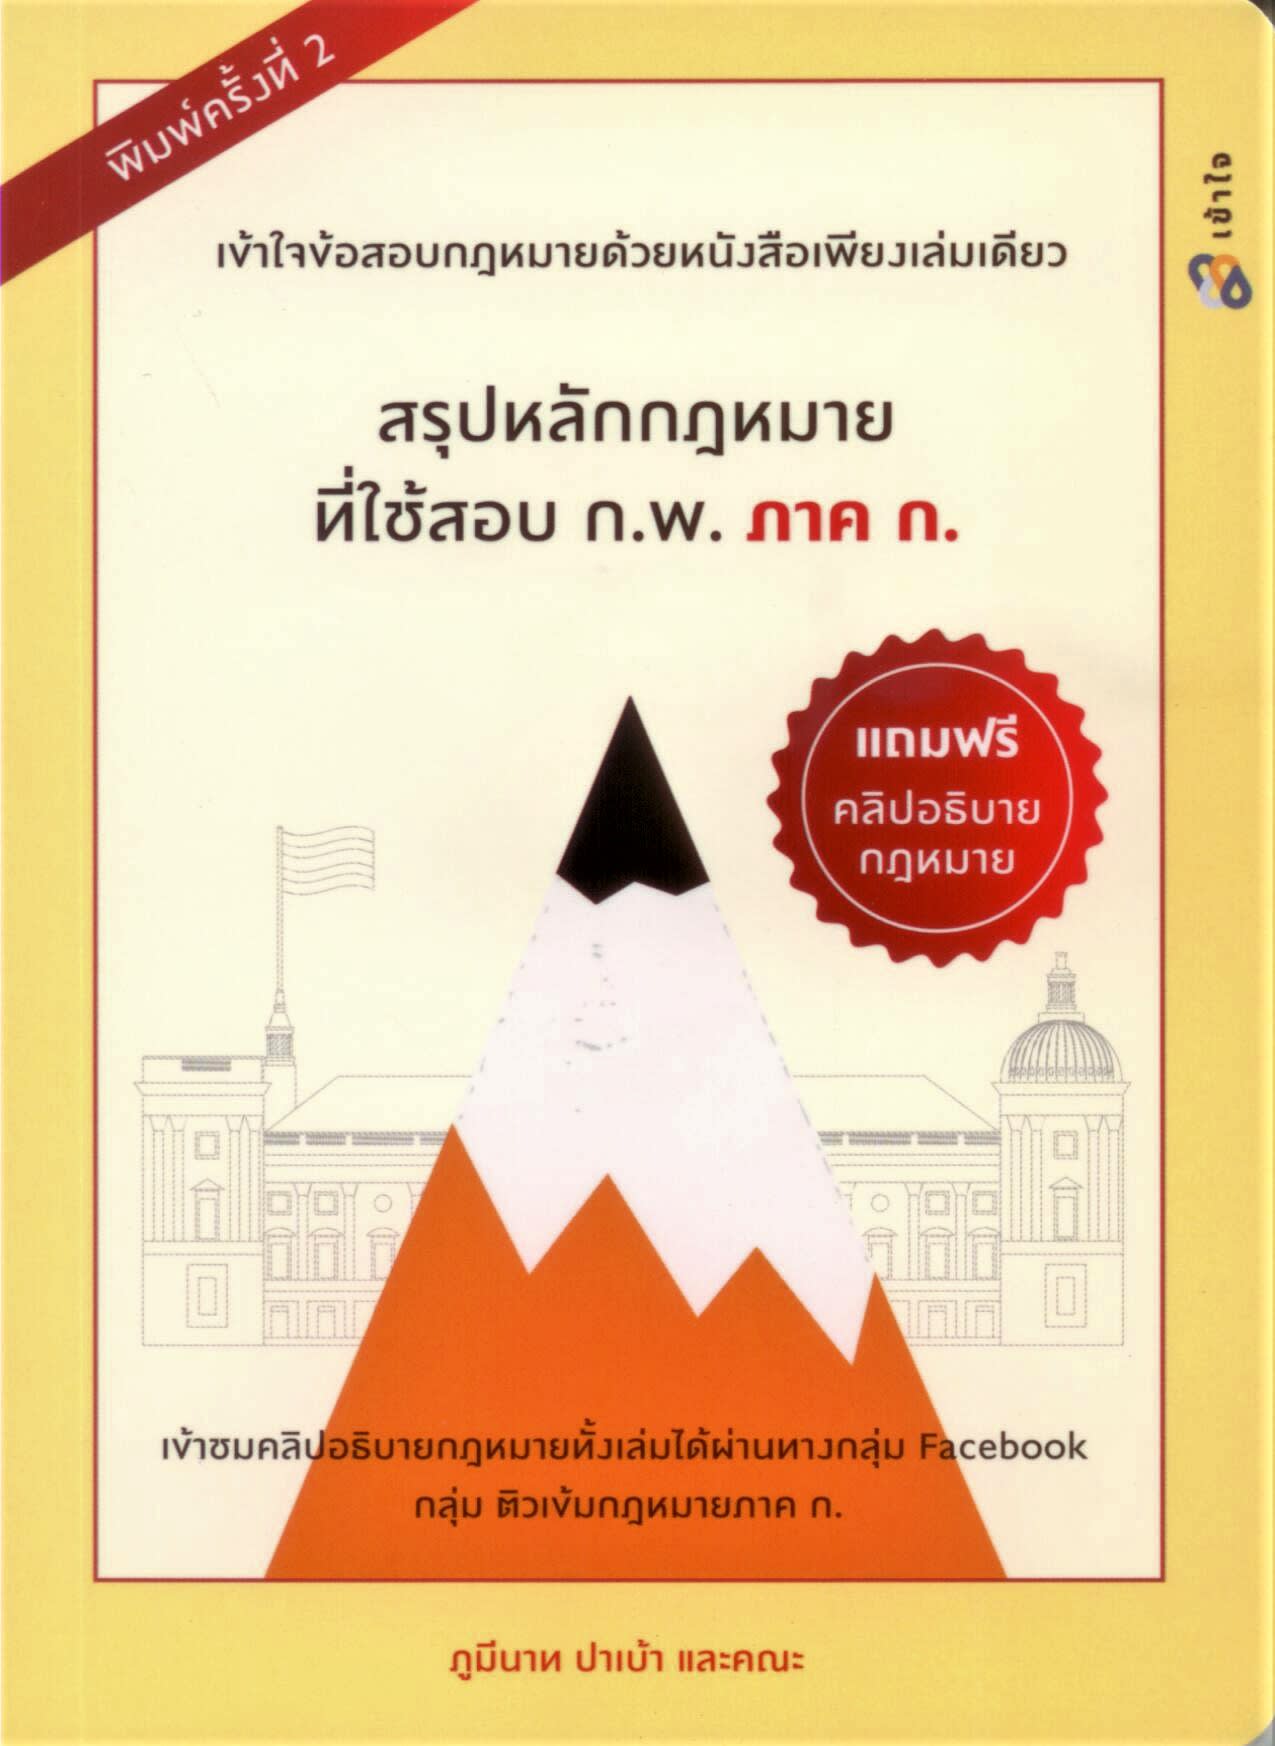 สรุปหลักกฎหมายที่ใช้สอบ ก.พ. ภาค ก.-review-thailand